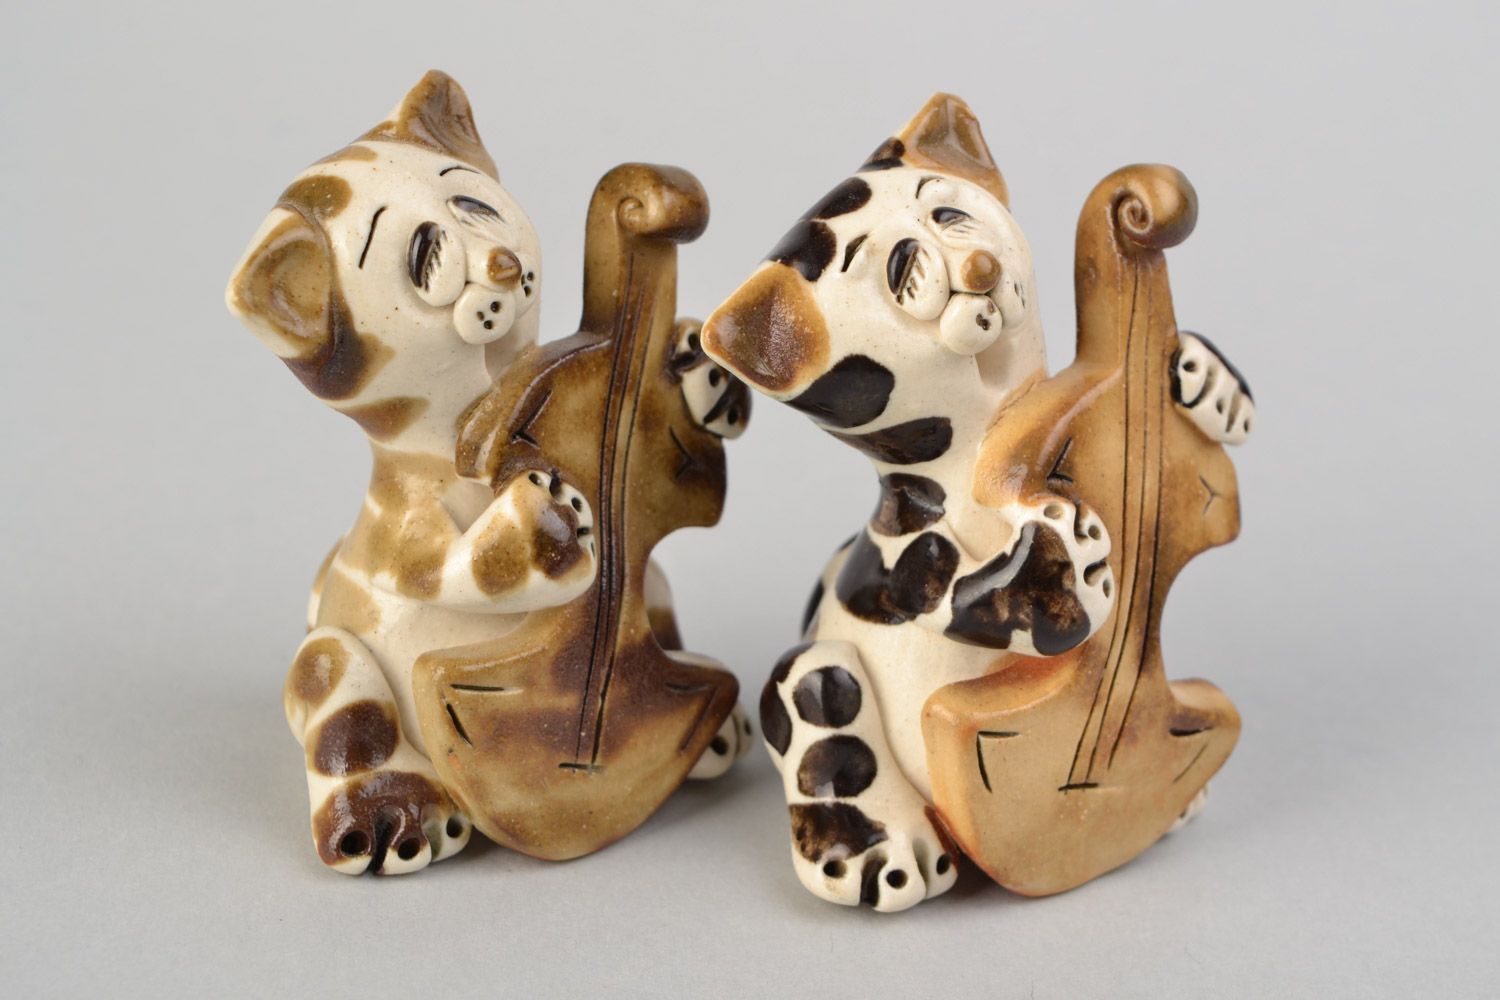 Handmade cute ceramic figurines 2 pieces funny cats for interior decor photo 1